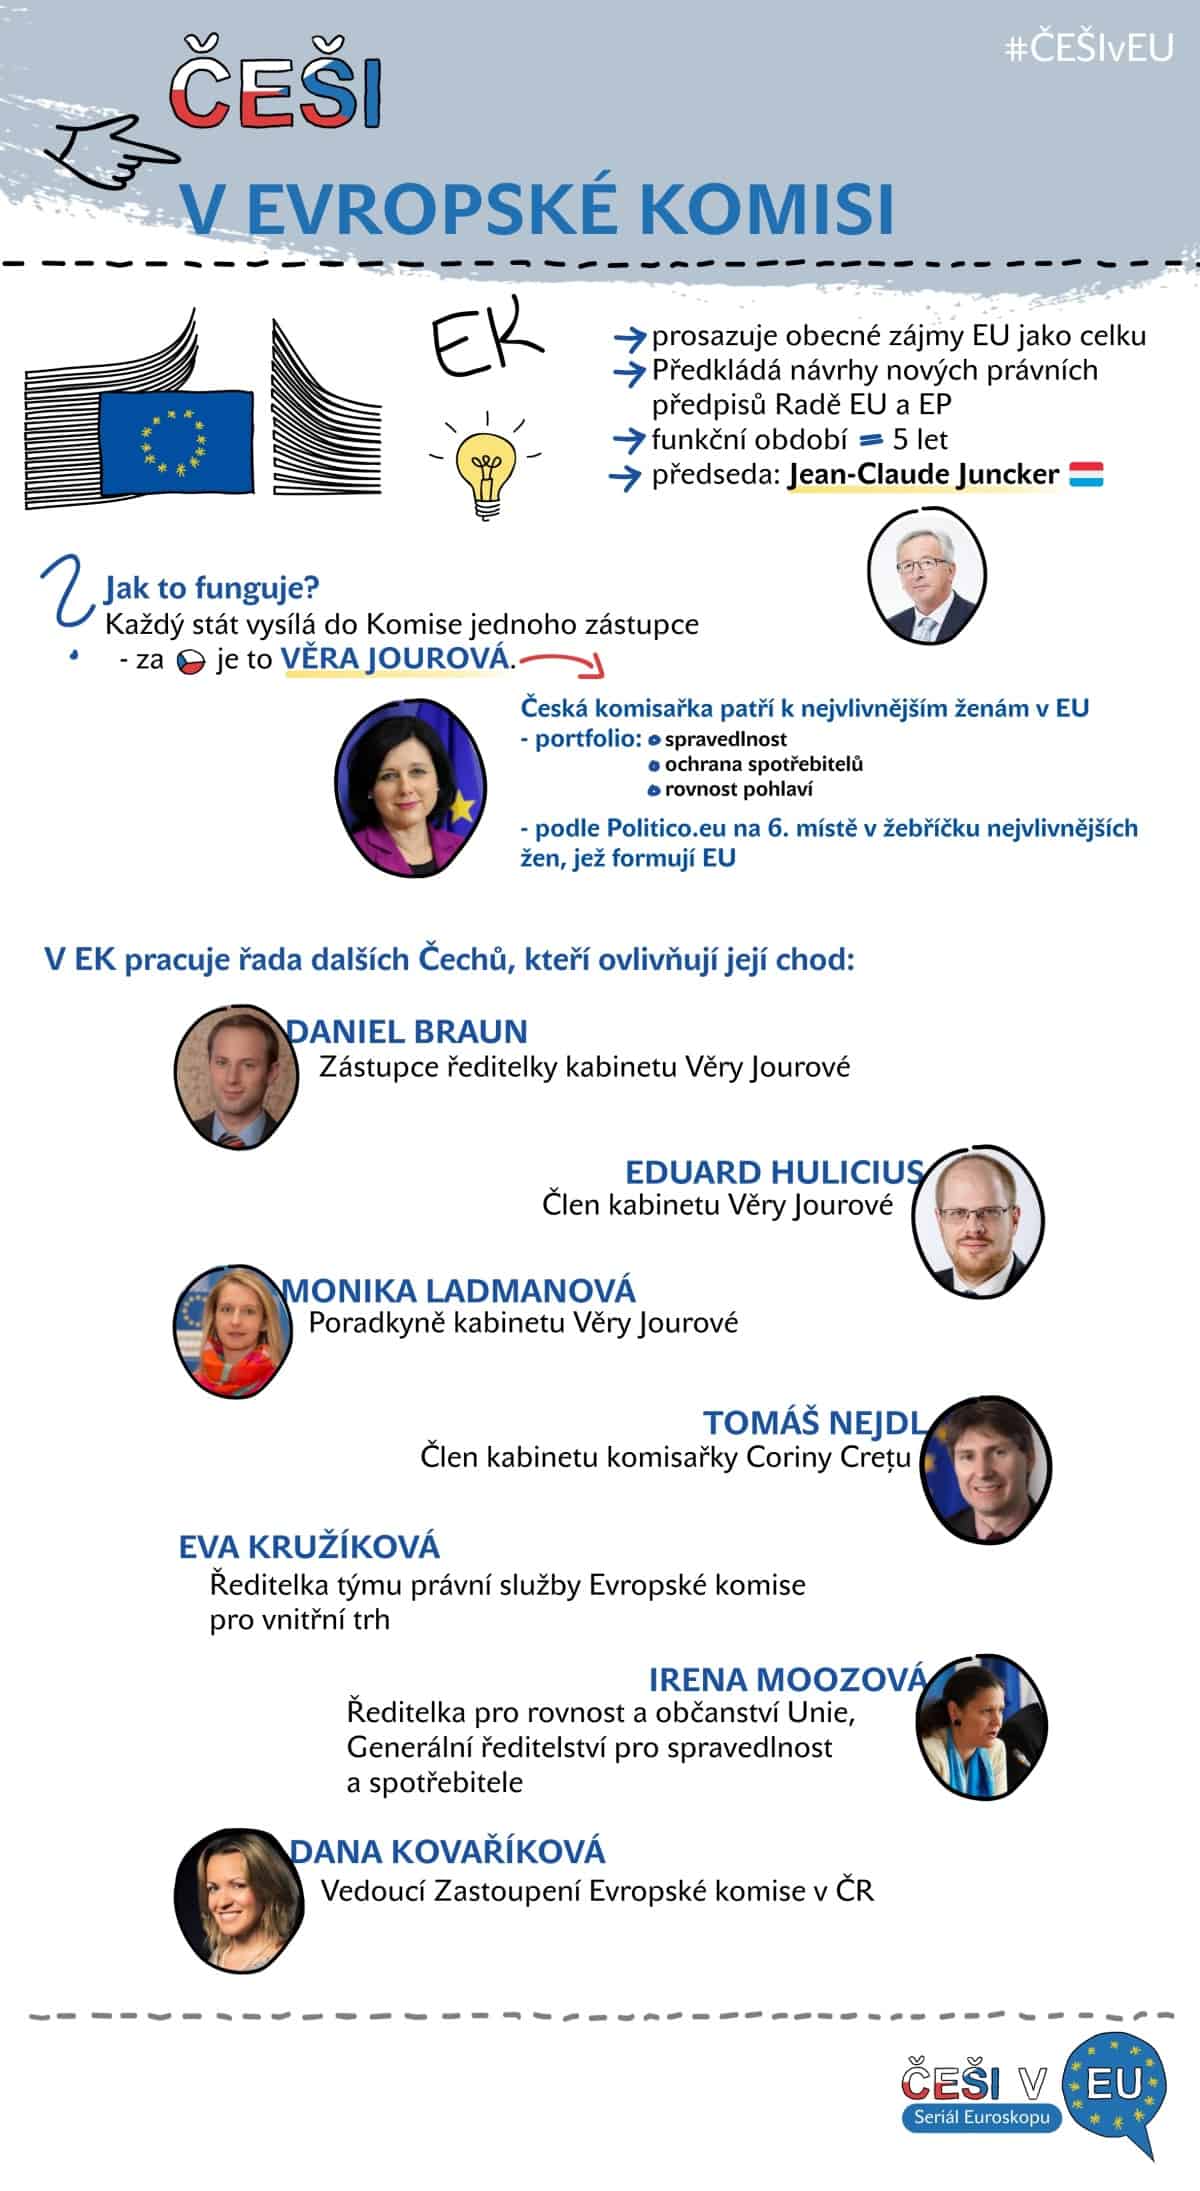 Češi v EU 4, infografika: Kristina Kvapilová 2018